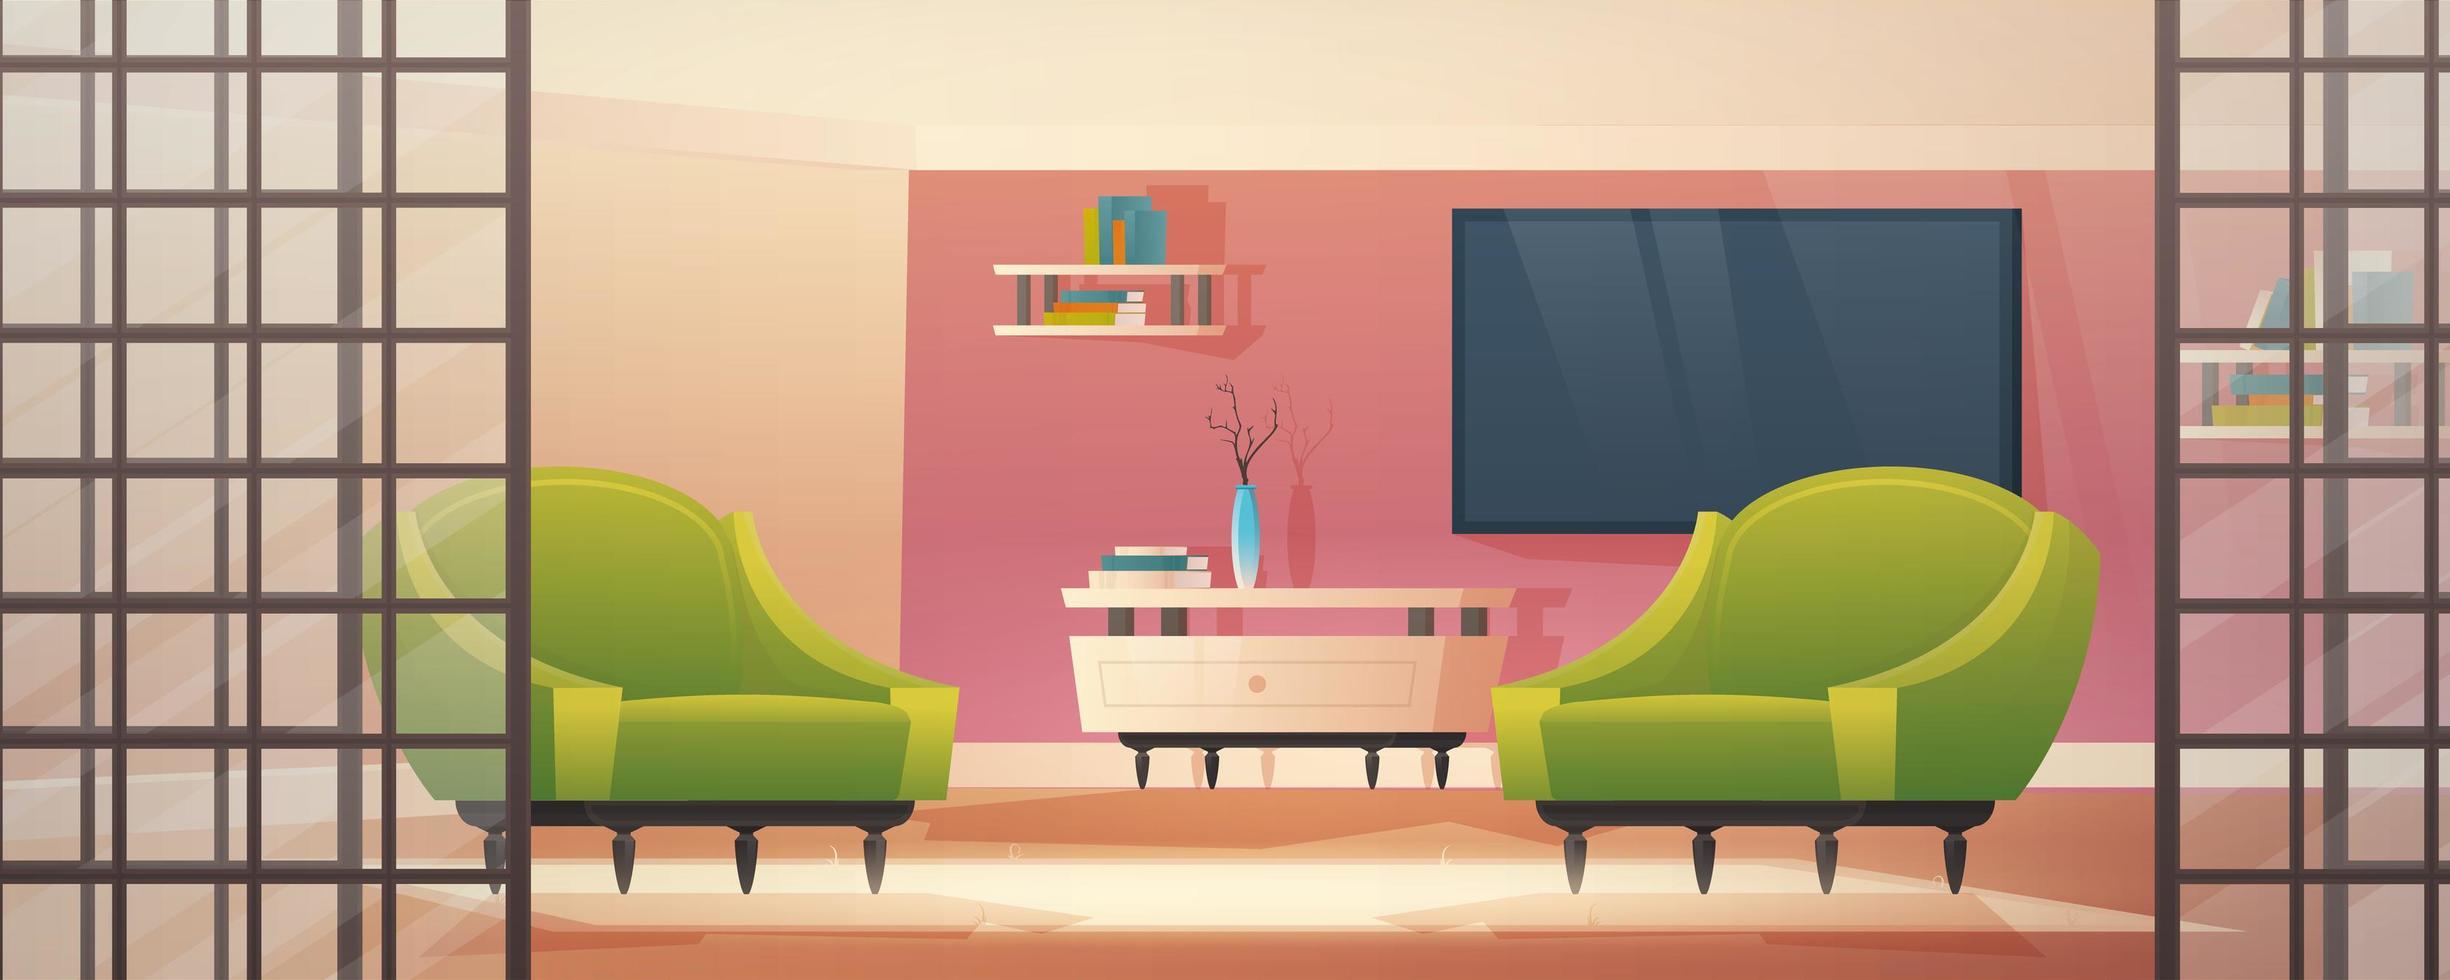 interieur met hal ingang en meubilair. lichte hal, woonkamer met fauteuils en vloerbedekking. cartoon vectorillustratie. vector